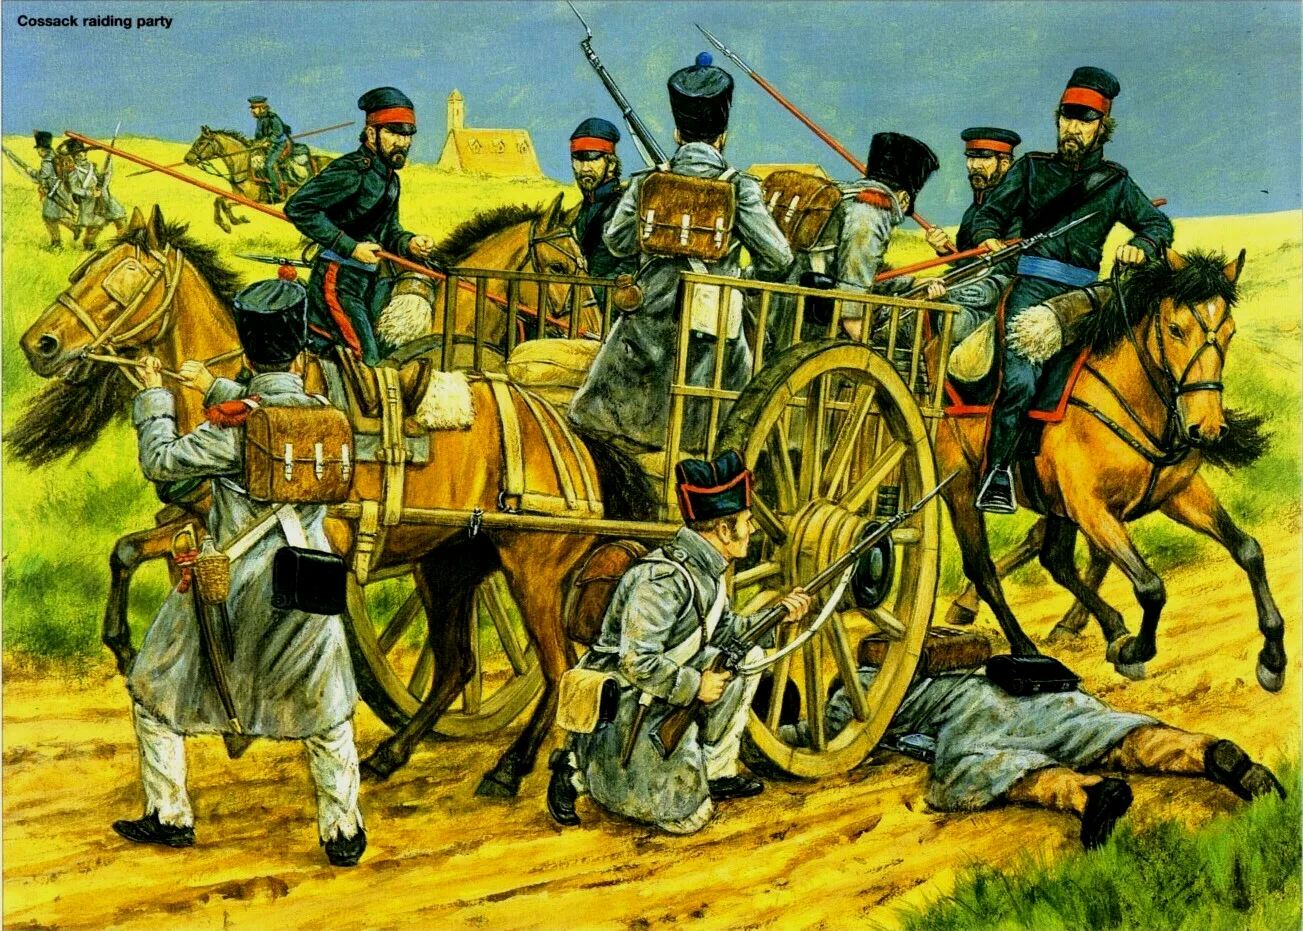 哥萨克骑兵的突击让拿破仑大军团的元气受到了严重损失